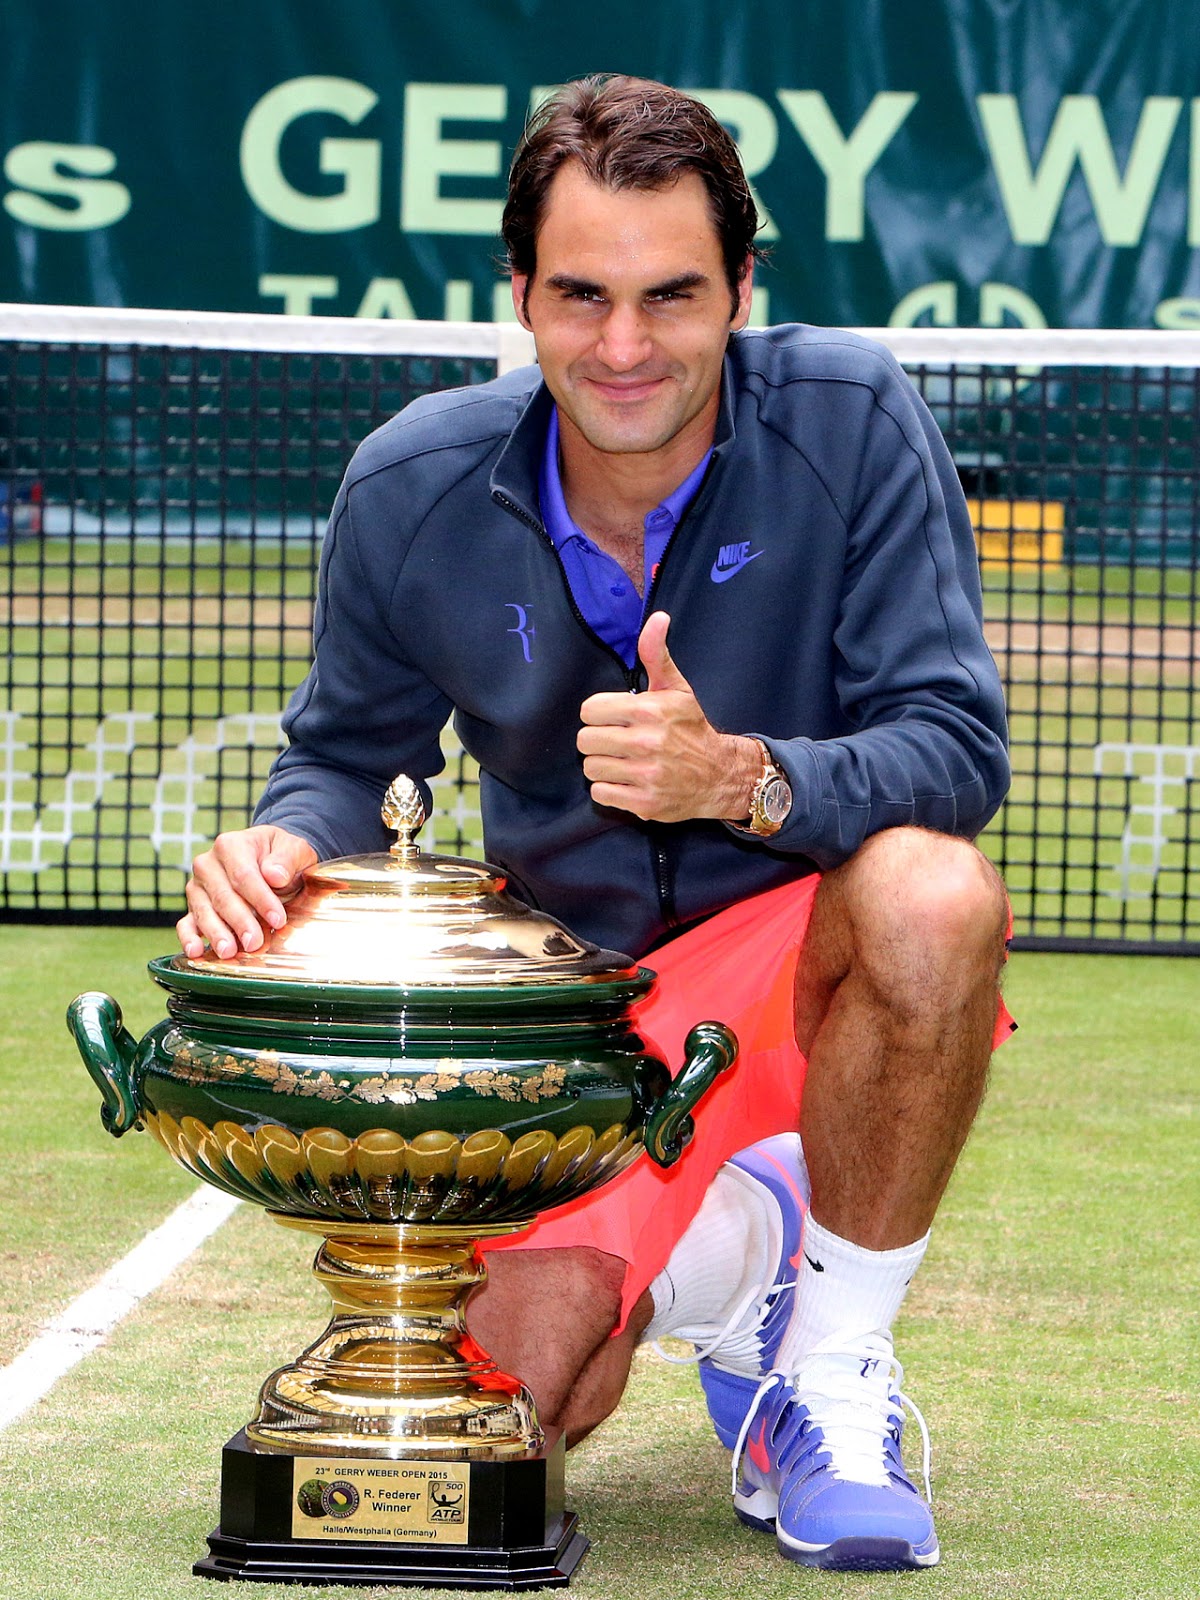 ergens vriendelijk stem RANDOM THOUGHTS OF A LURKER: Roger Federer 8-time Gerry Weber Open Champion!